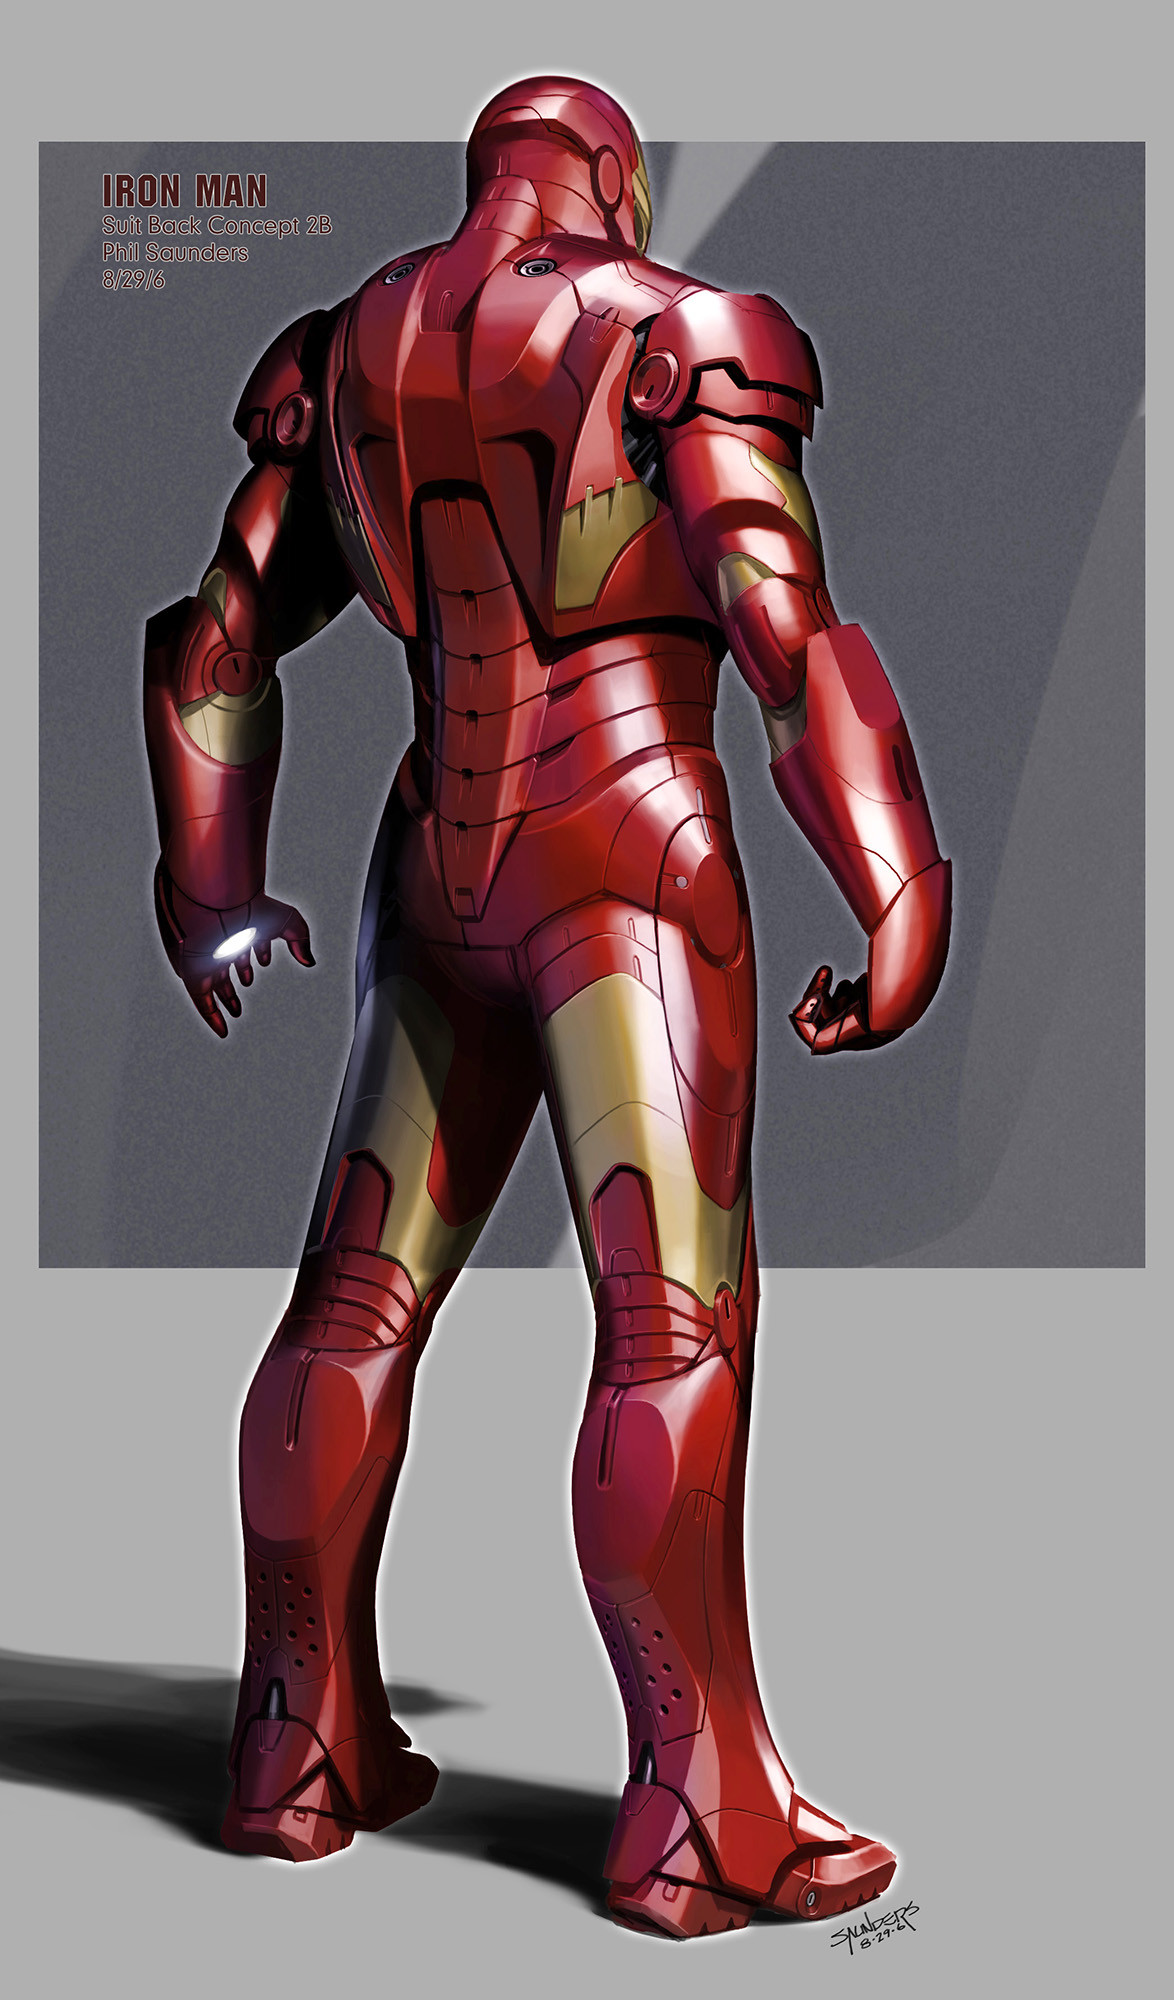 Artstation - Iron Man (2006) - Iron Man Mk 3 Suit Design